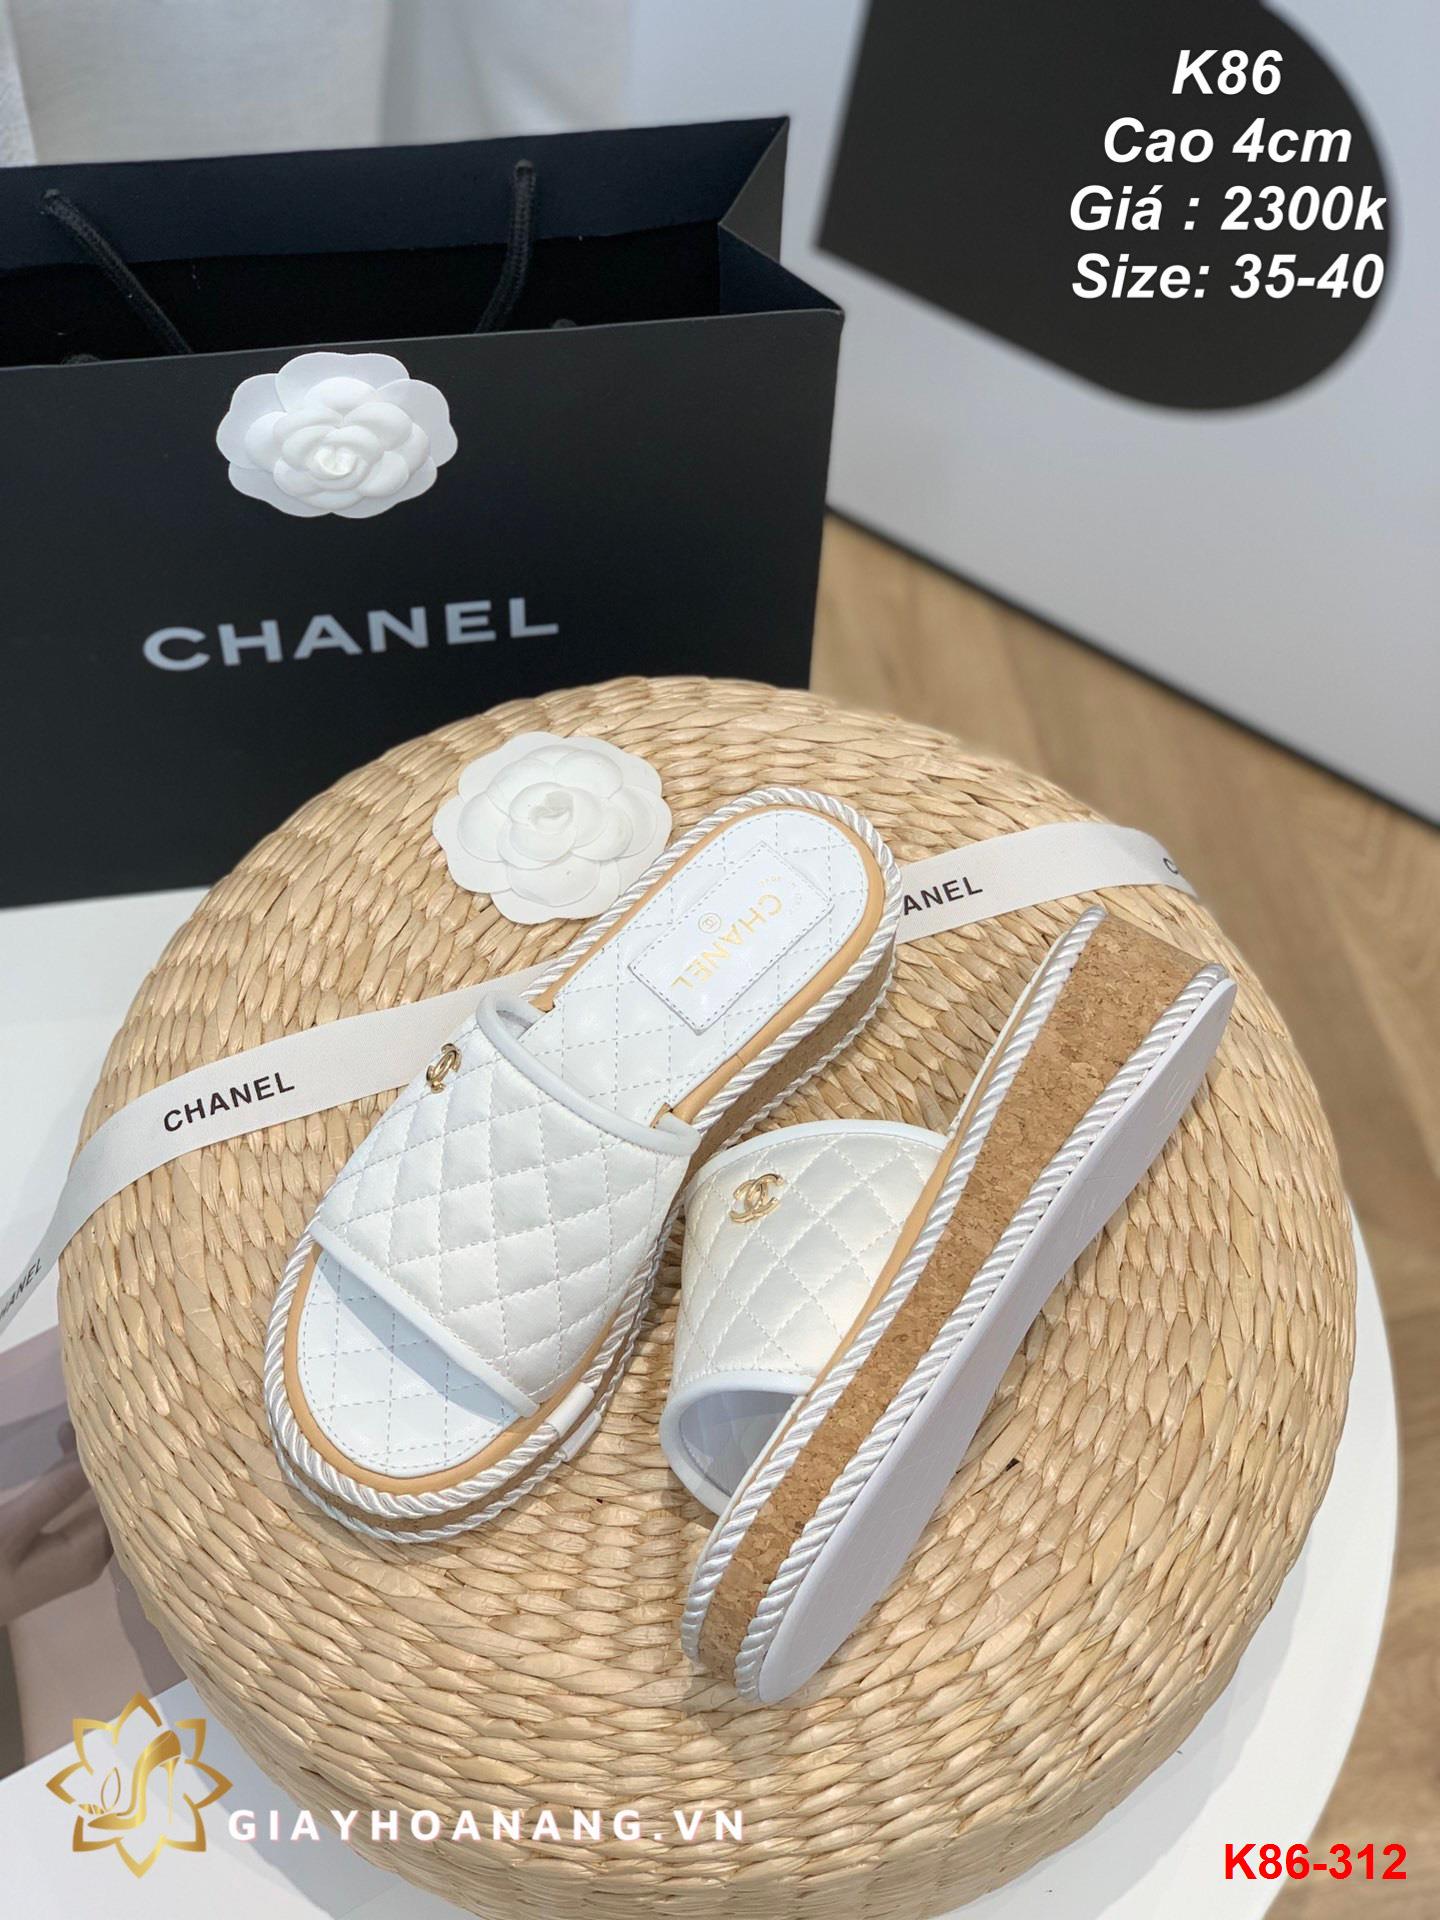 K86-312 Chanel dép cao 4cm siêu cấp